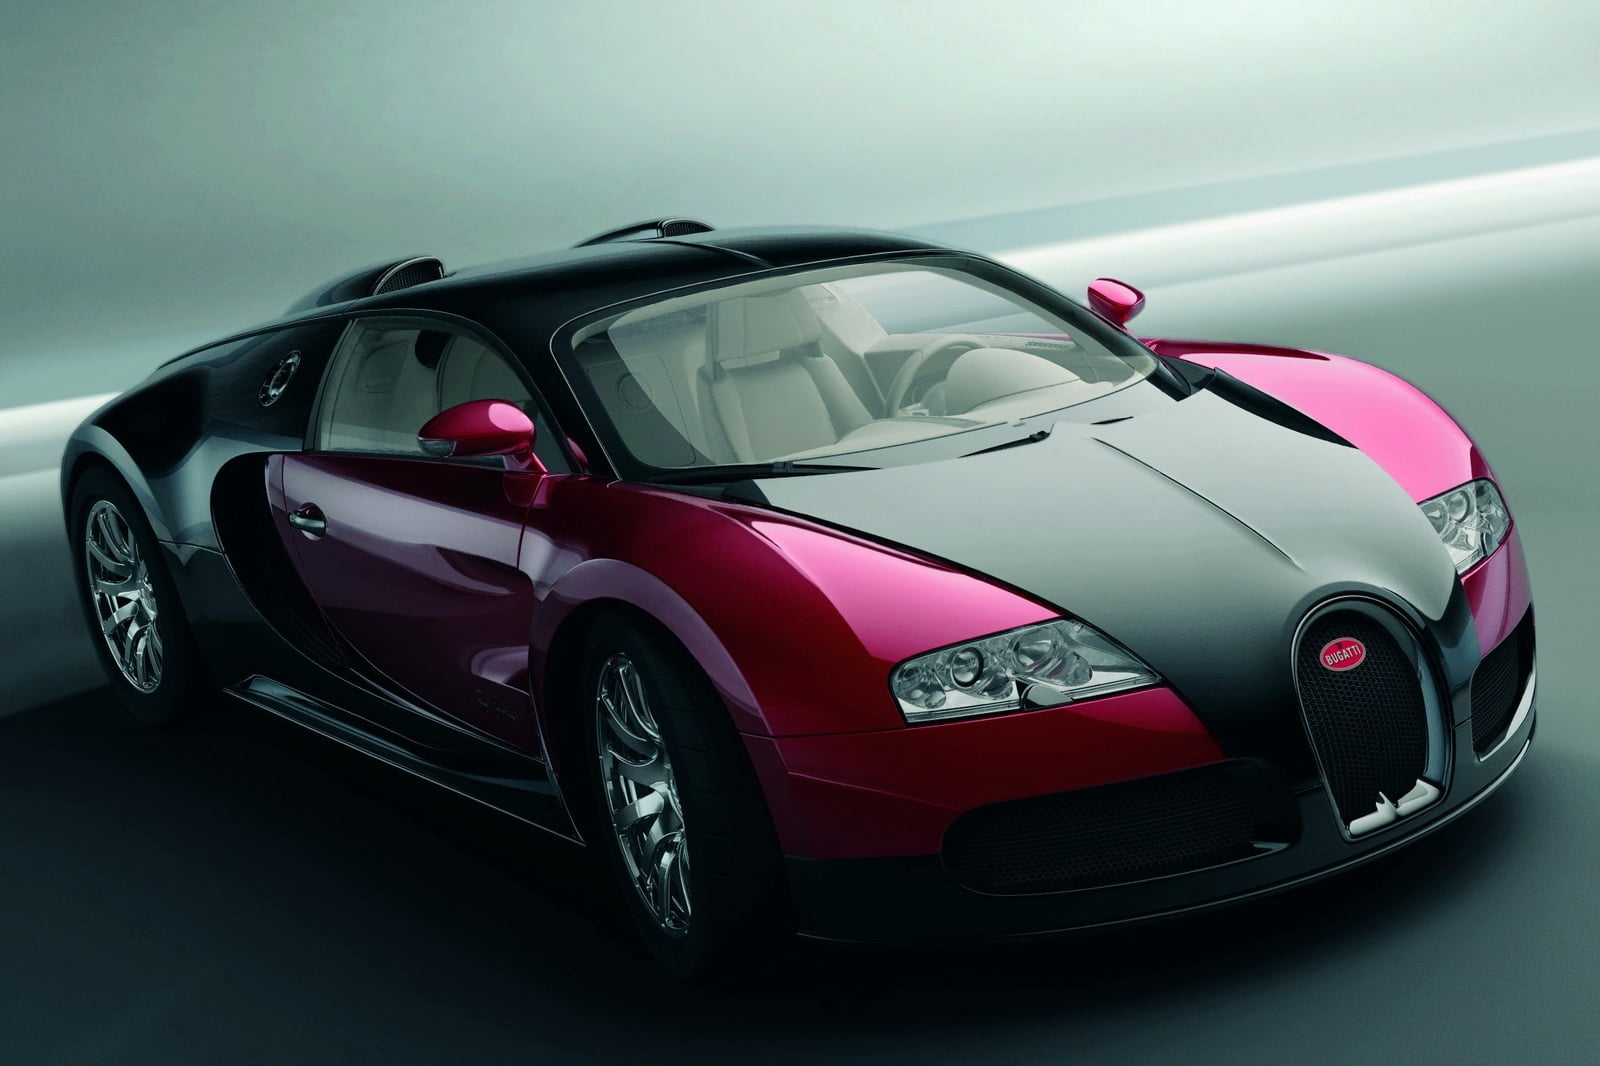 Bugatti Veyron, pink and black Bugatti Chiron coupe, Cars, motor vehicle